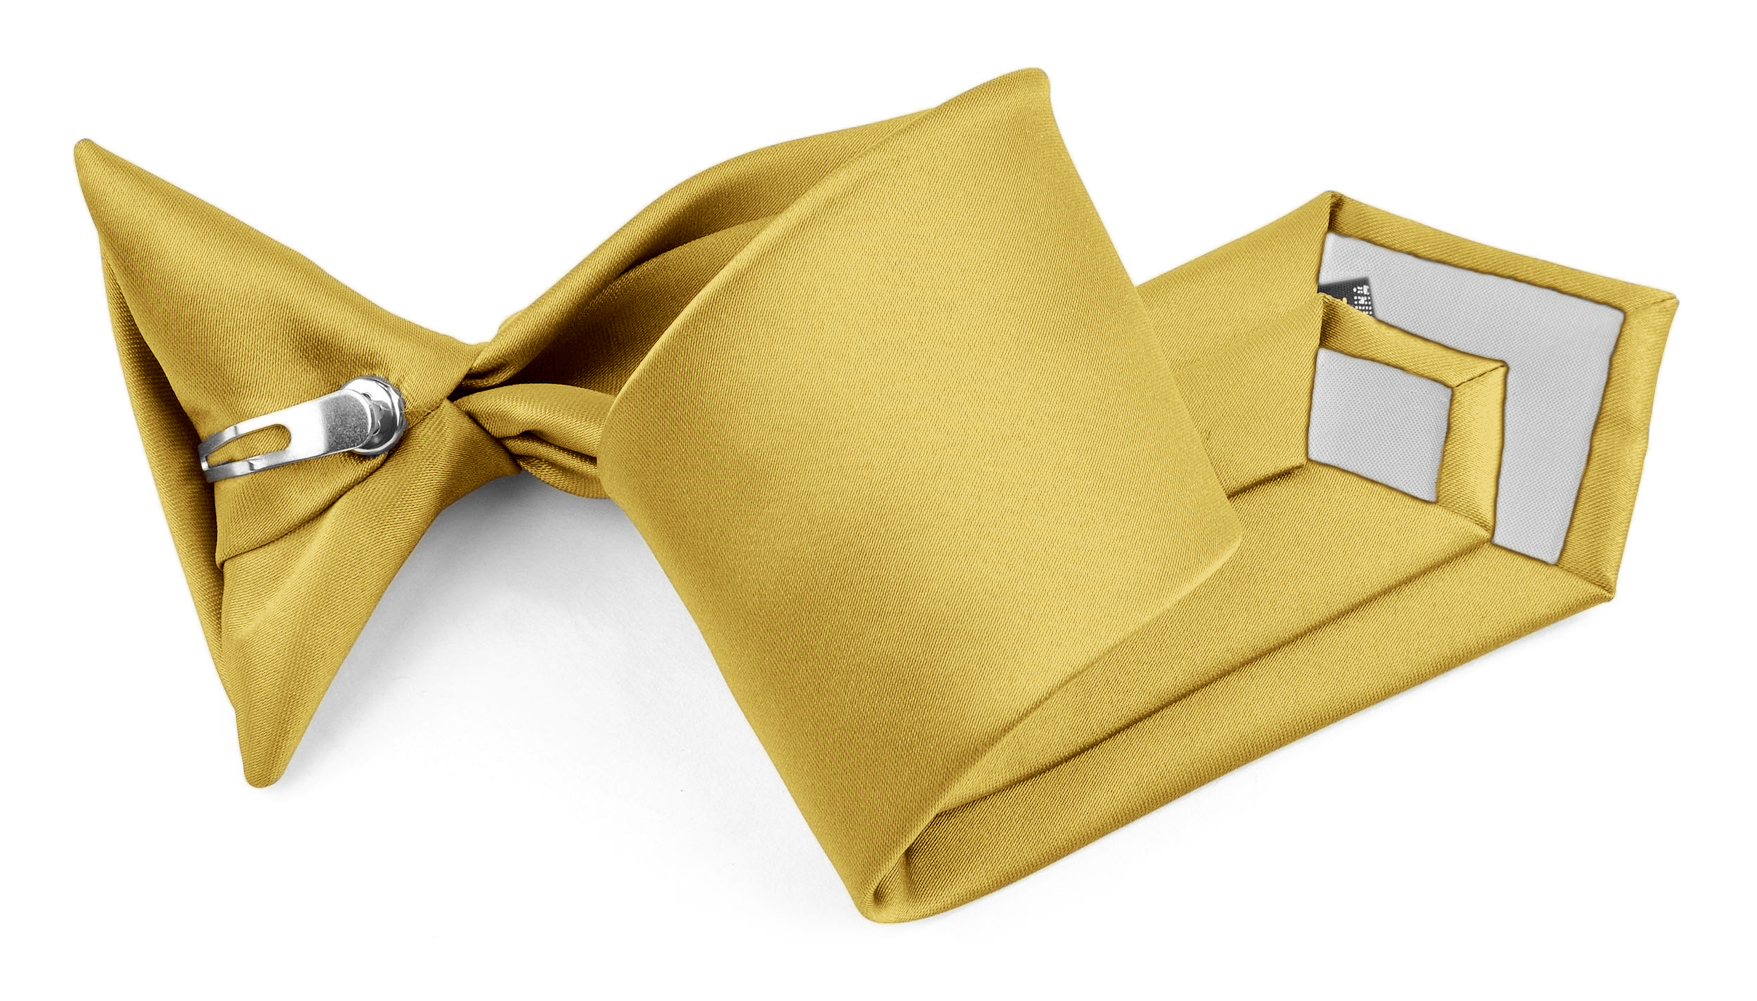 Moda Di Raza Soft Comfortable Solid Color Boys Ties | Easy To Wear Pre-Tied Kids Tie | Clip On Tie for Boys Formal Wedding Graduation School Uniforms - Honey Gold 8 inch